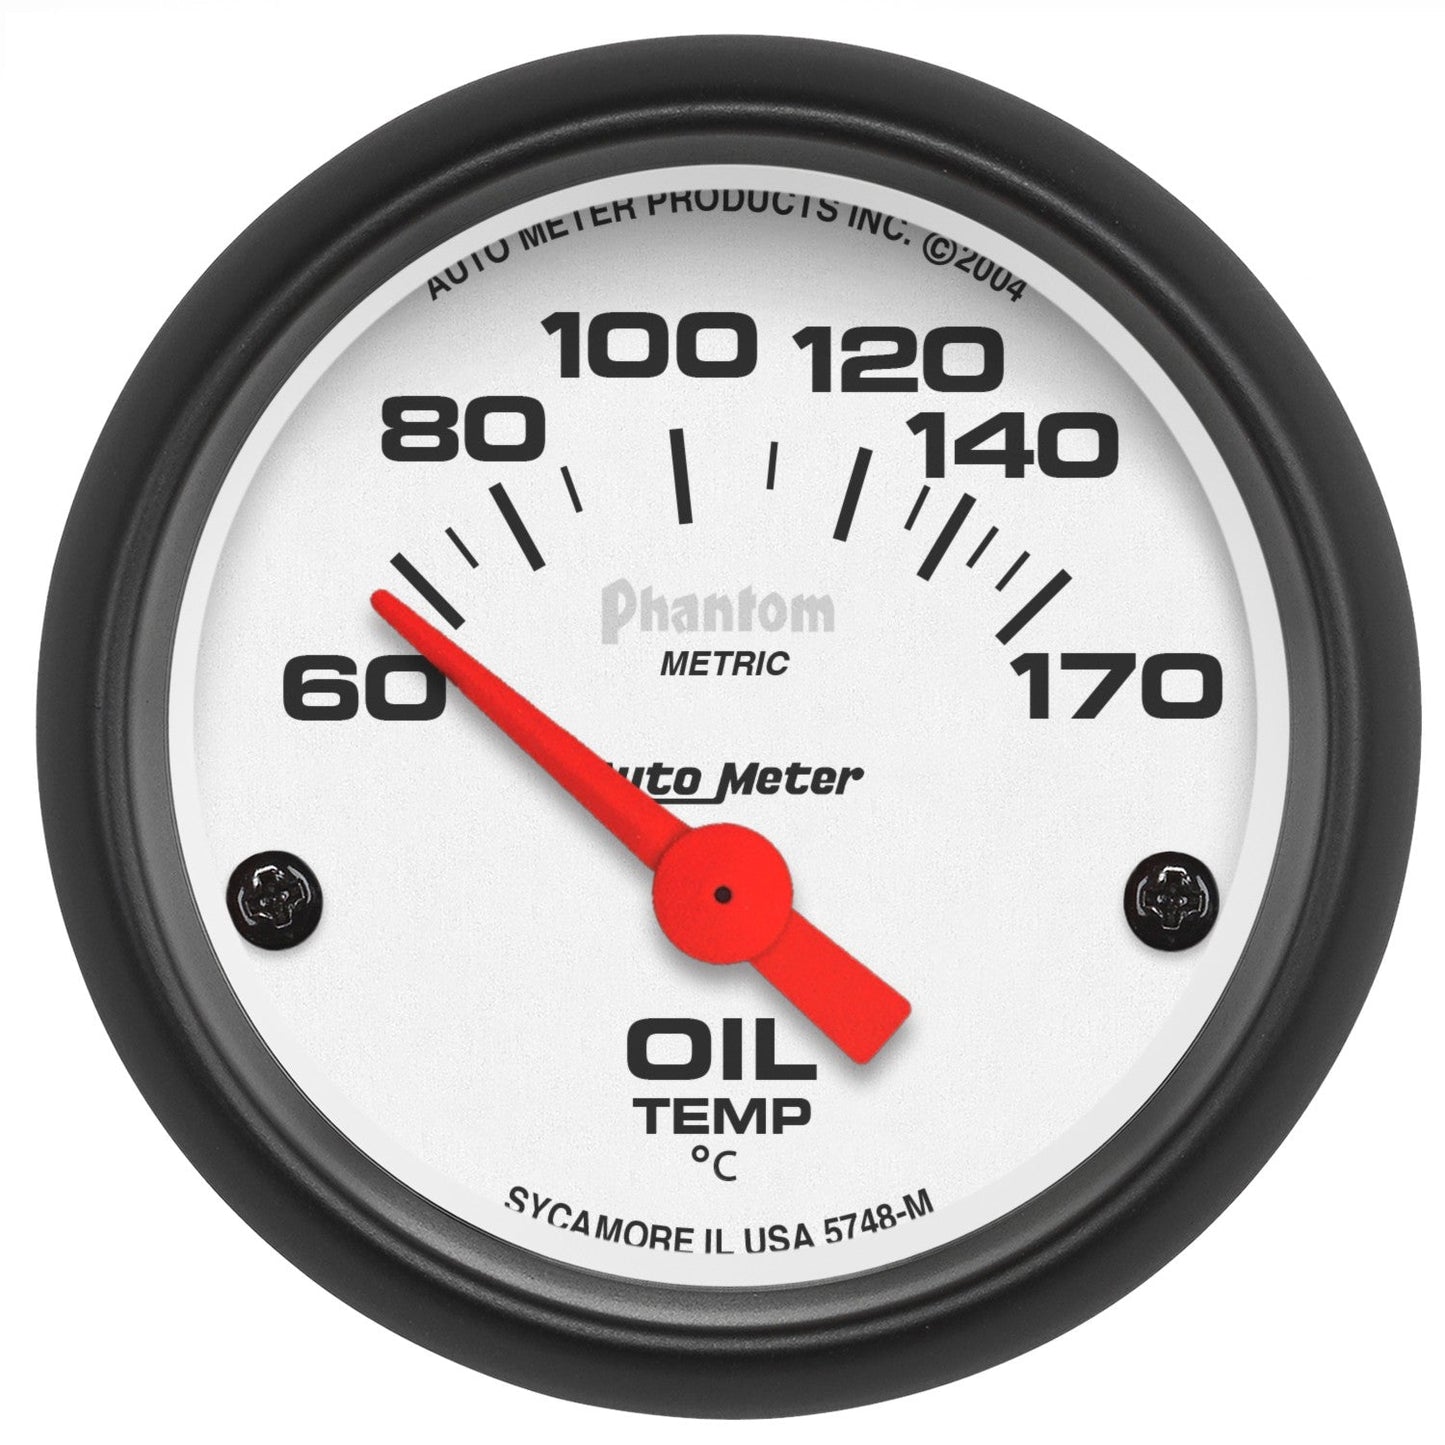 AutoMeter - 2-1/16" OIL TEMPERATURE, 60-170 °C, AIR-CORE, PHANTOM 5748-M)